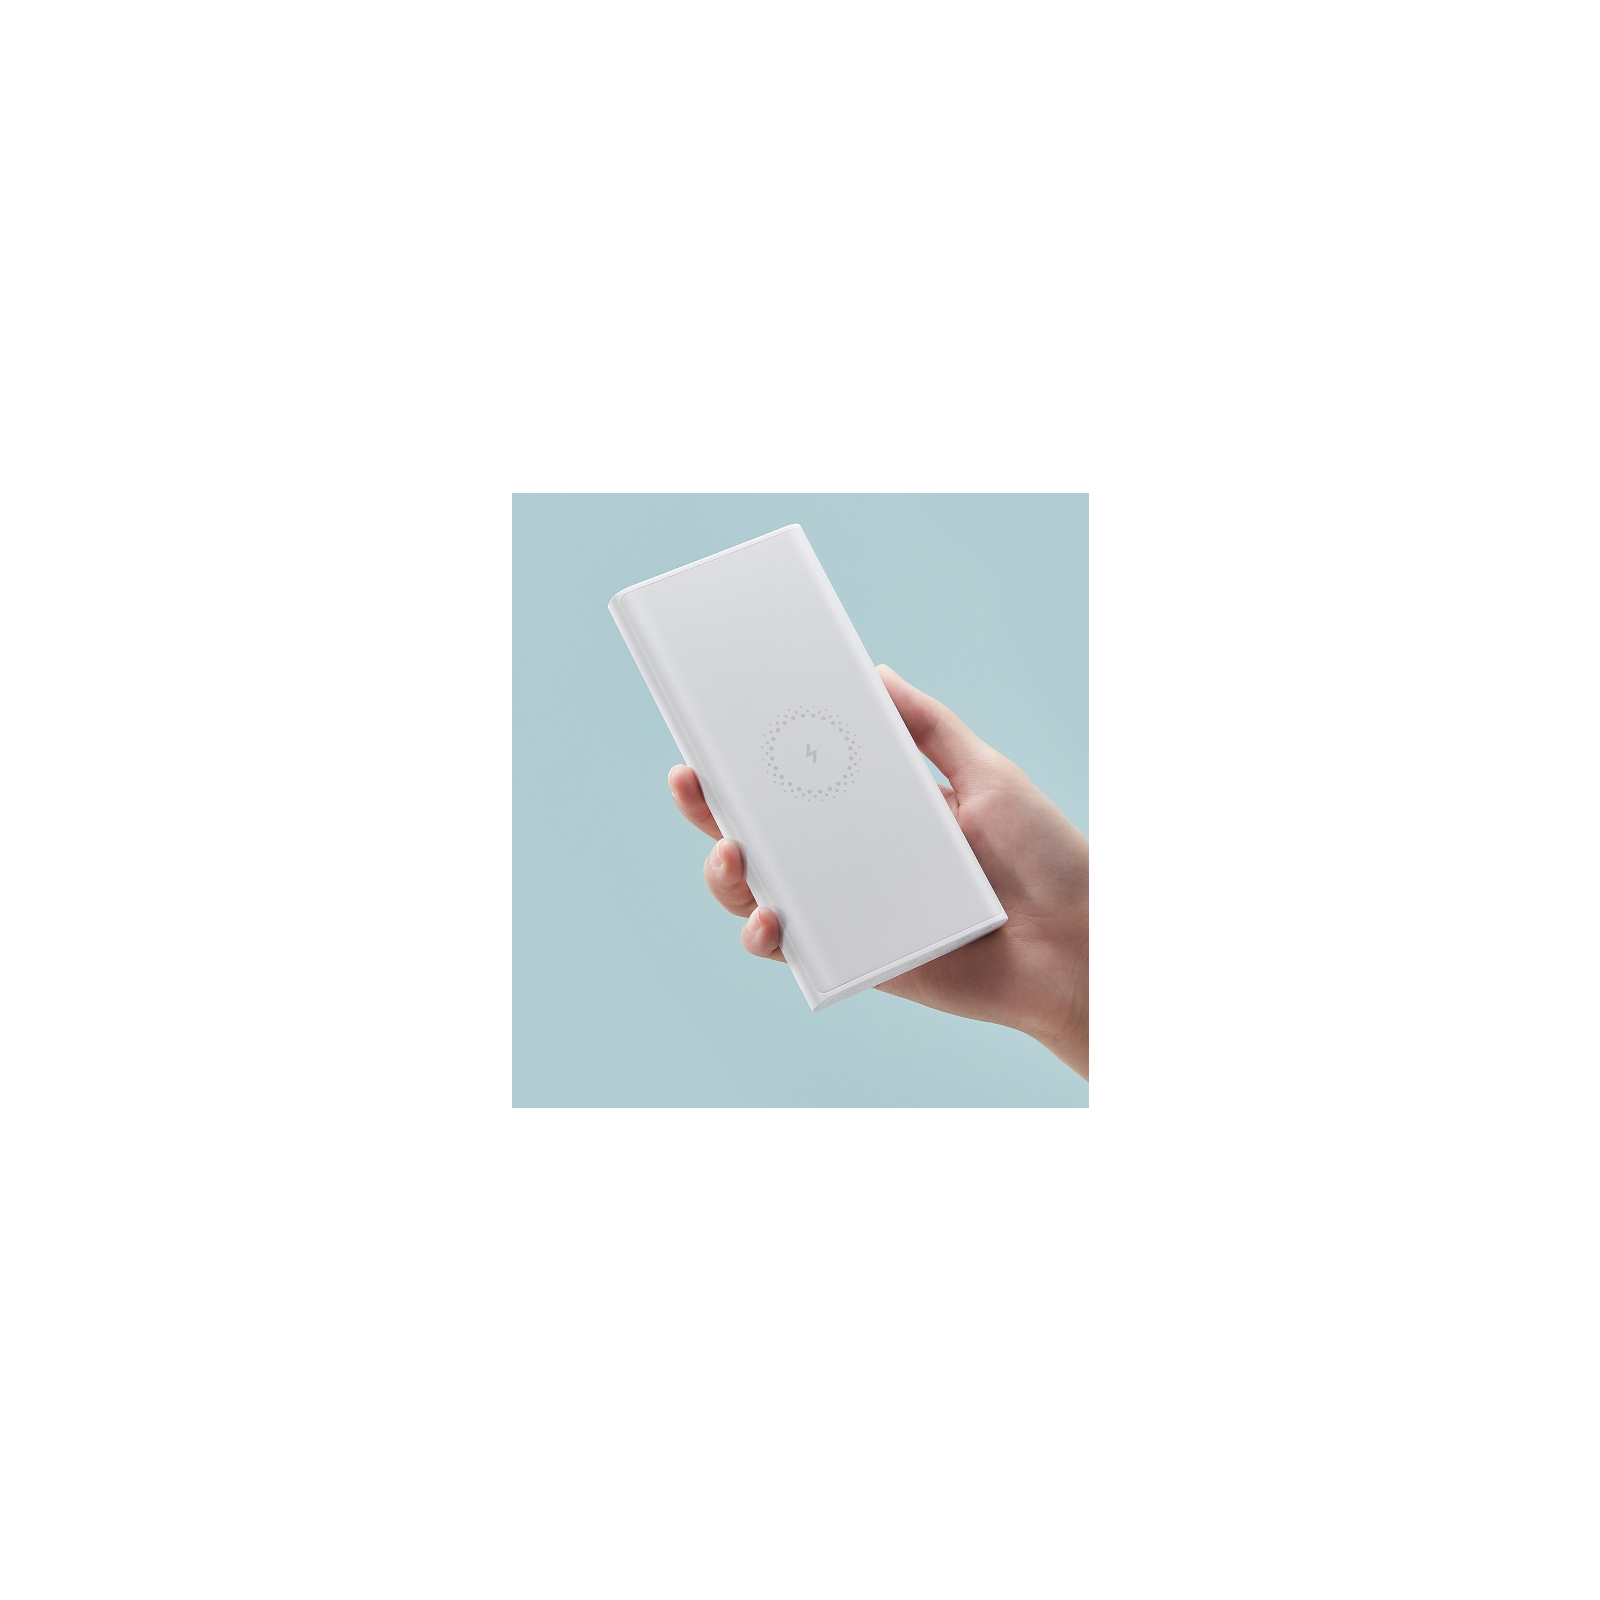 Батарея універсальна Xiaomi Mi Wireless Youth Edition 10000 mAh White (562530) зображення 4